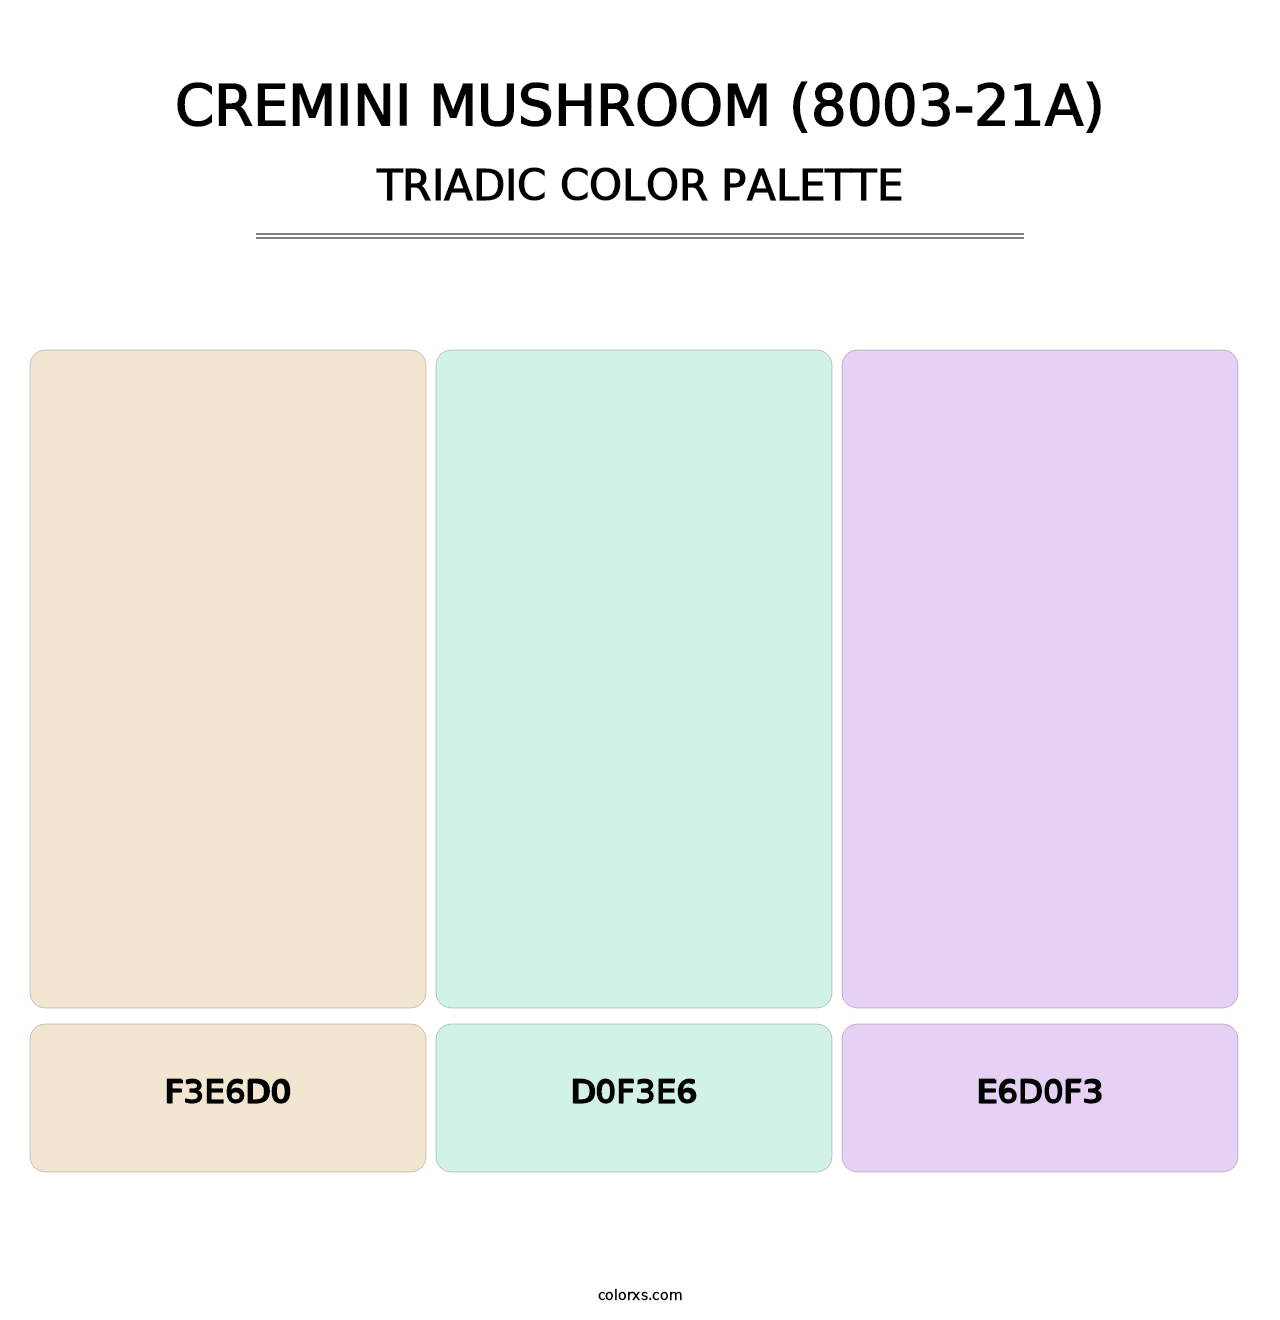 Cremini Mushroom (8003-21A) - Triadic Color Palette